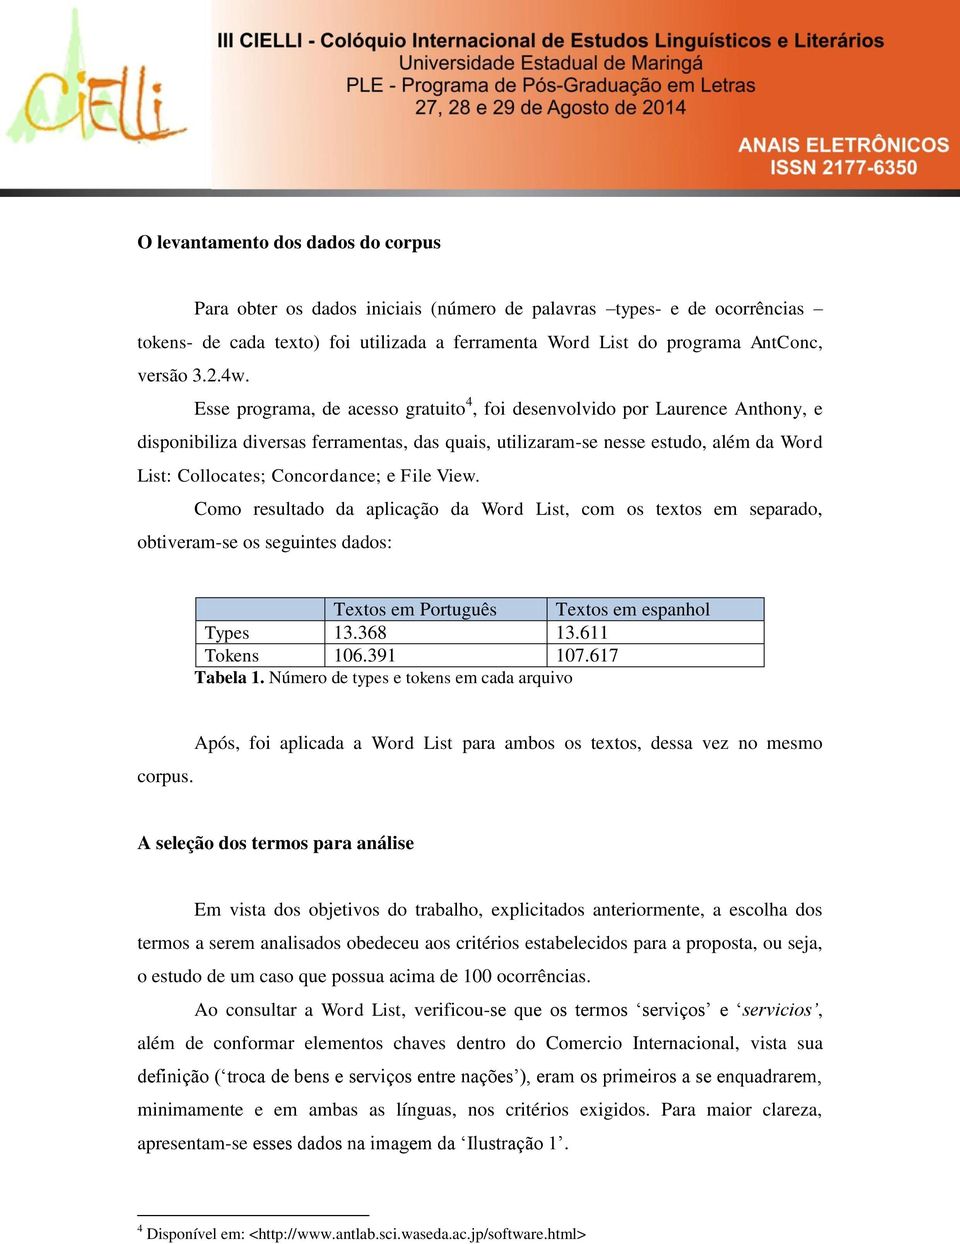 Concordance; e File View. Como resultado da aplicação da Word List, com os textos em separado, obtiveram-se os seguintes dados: Textos em Português Textos em espanhol Types 13.368 13.611 Tokens 106.